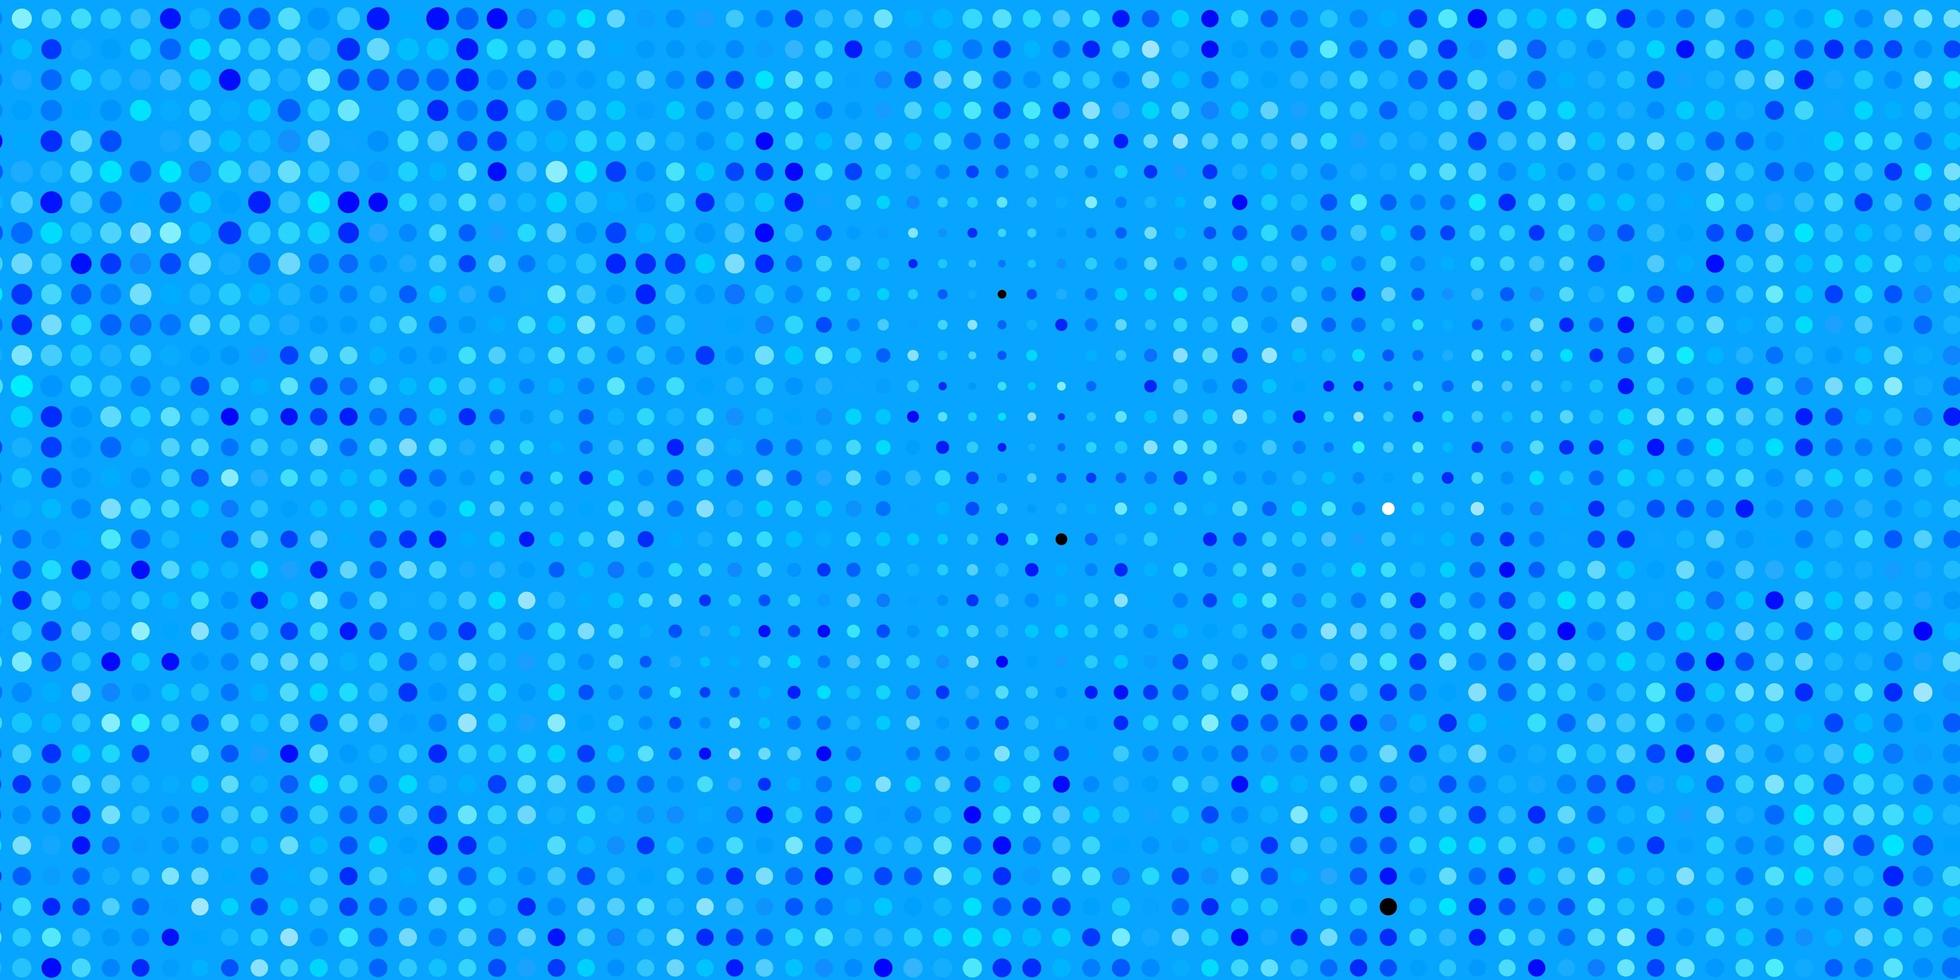 ljusblå vektor bakgrund med prickar.